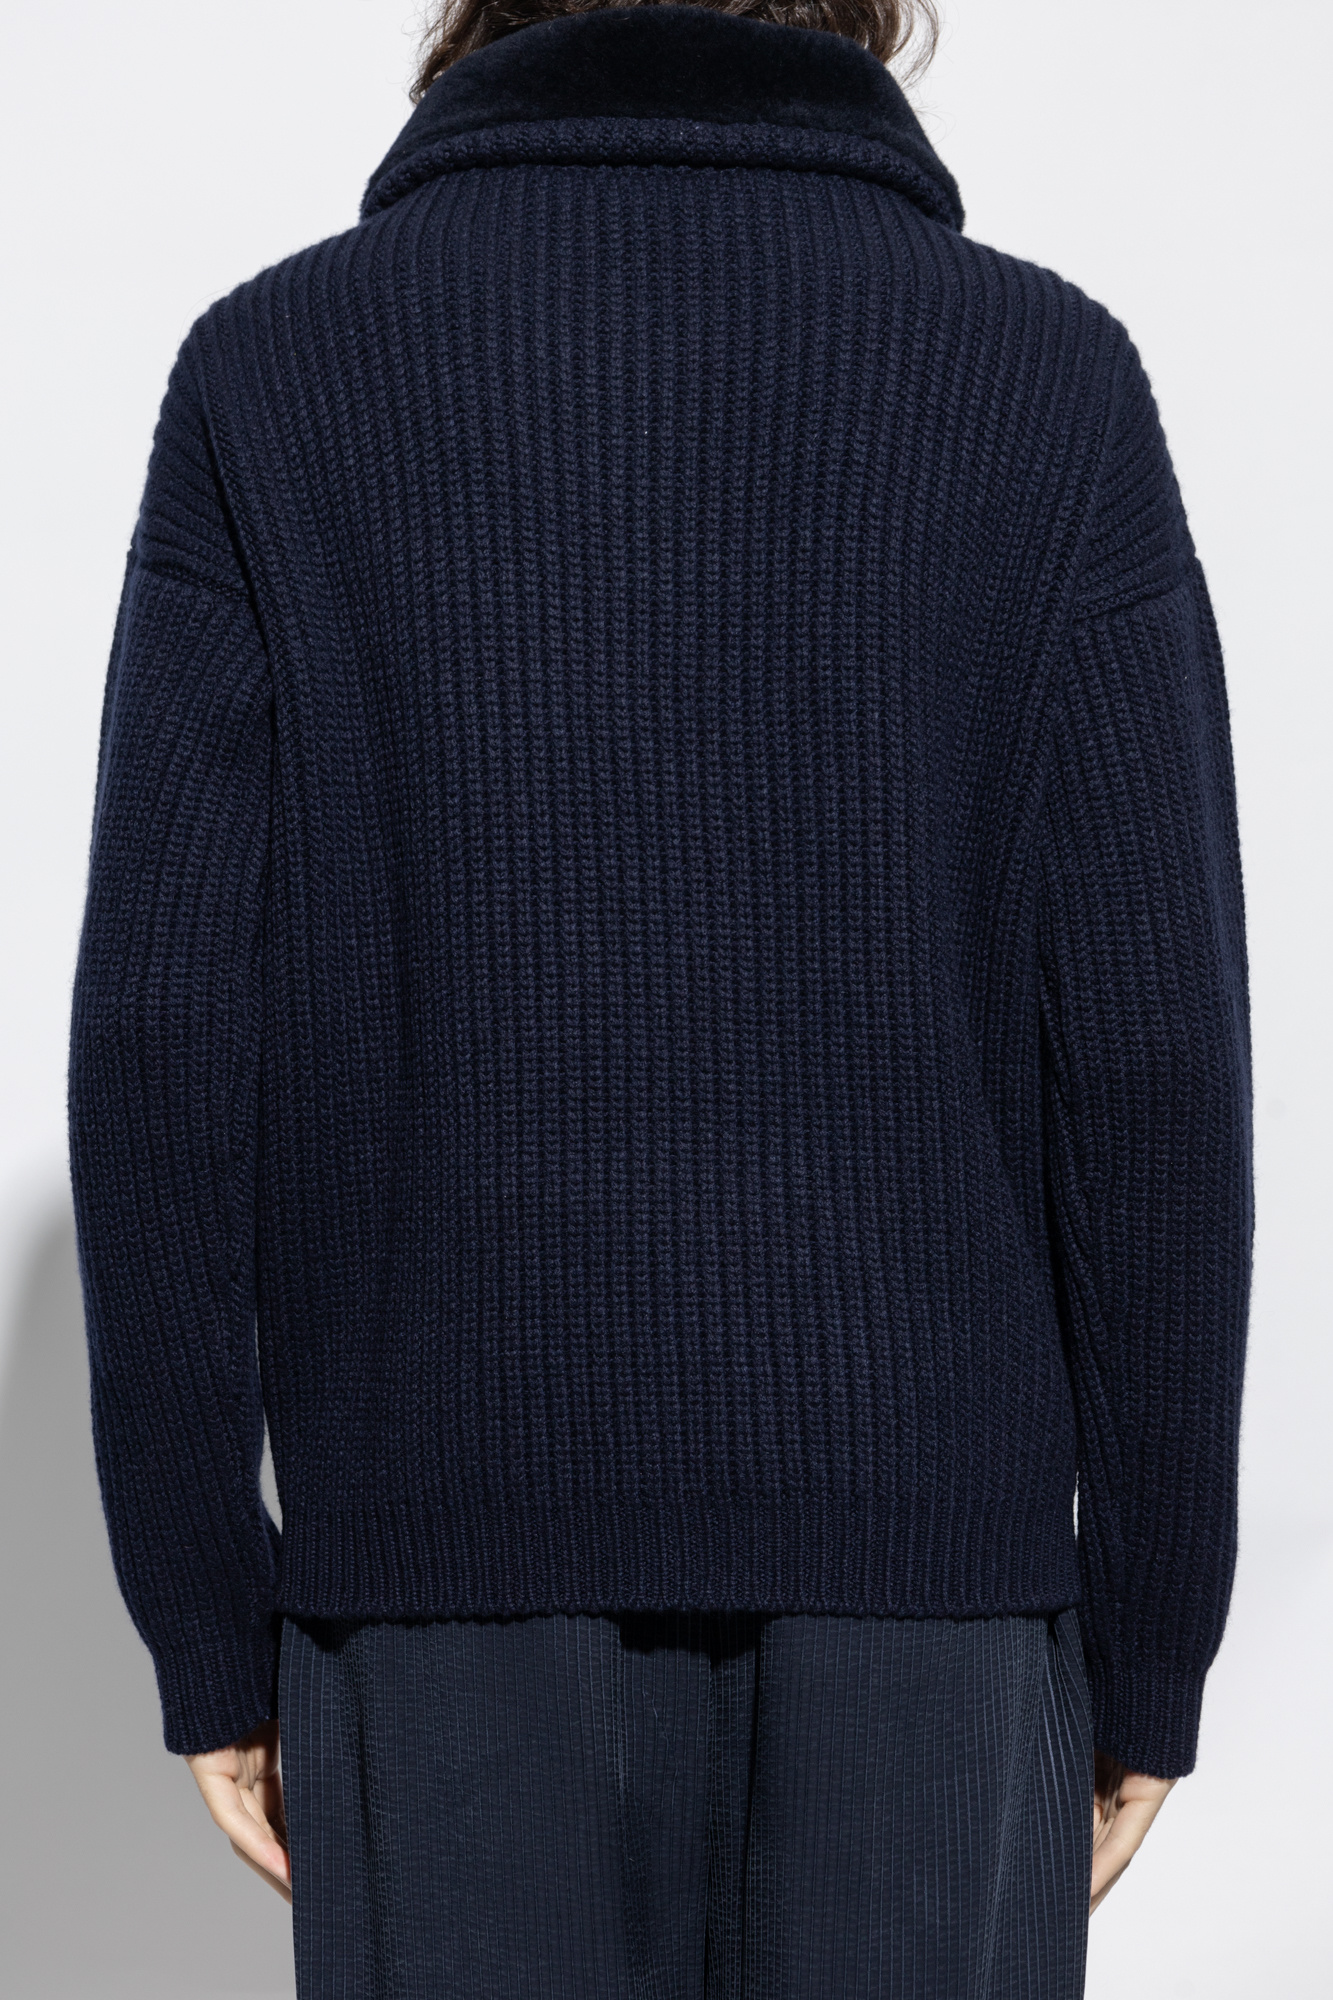 Giorgio Armani Cashmere Sweater - Blue - 52